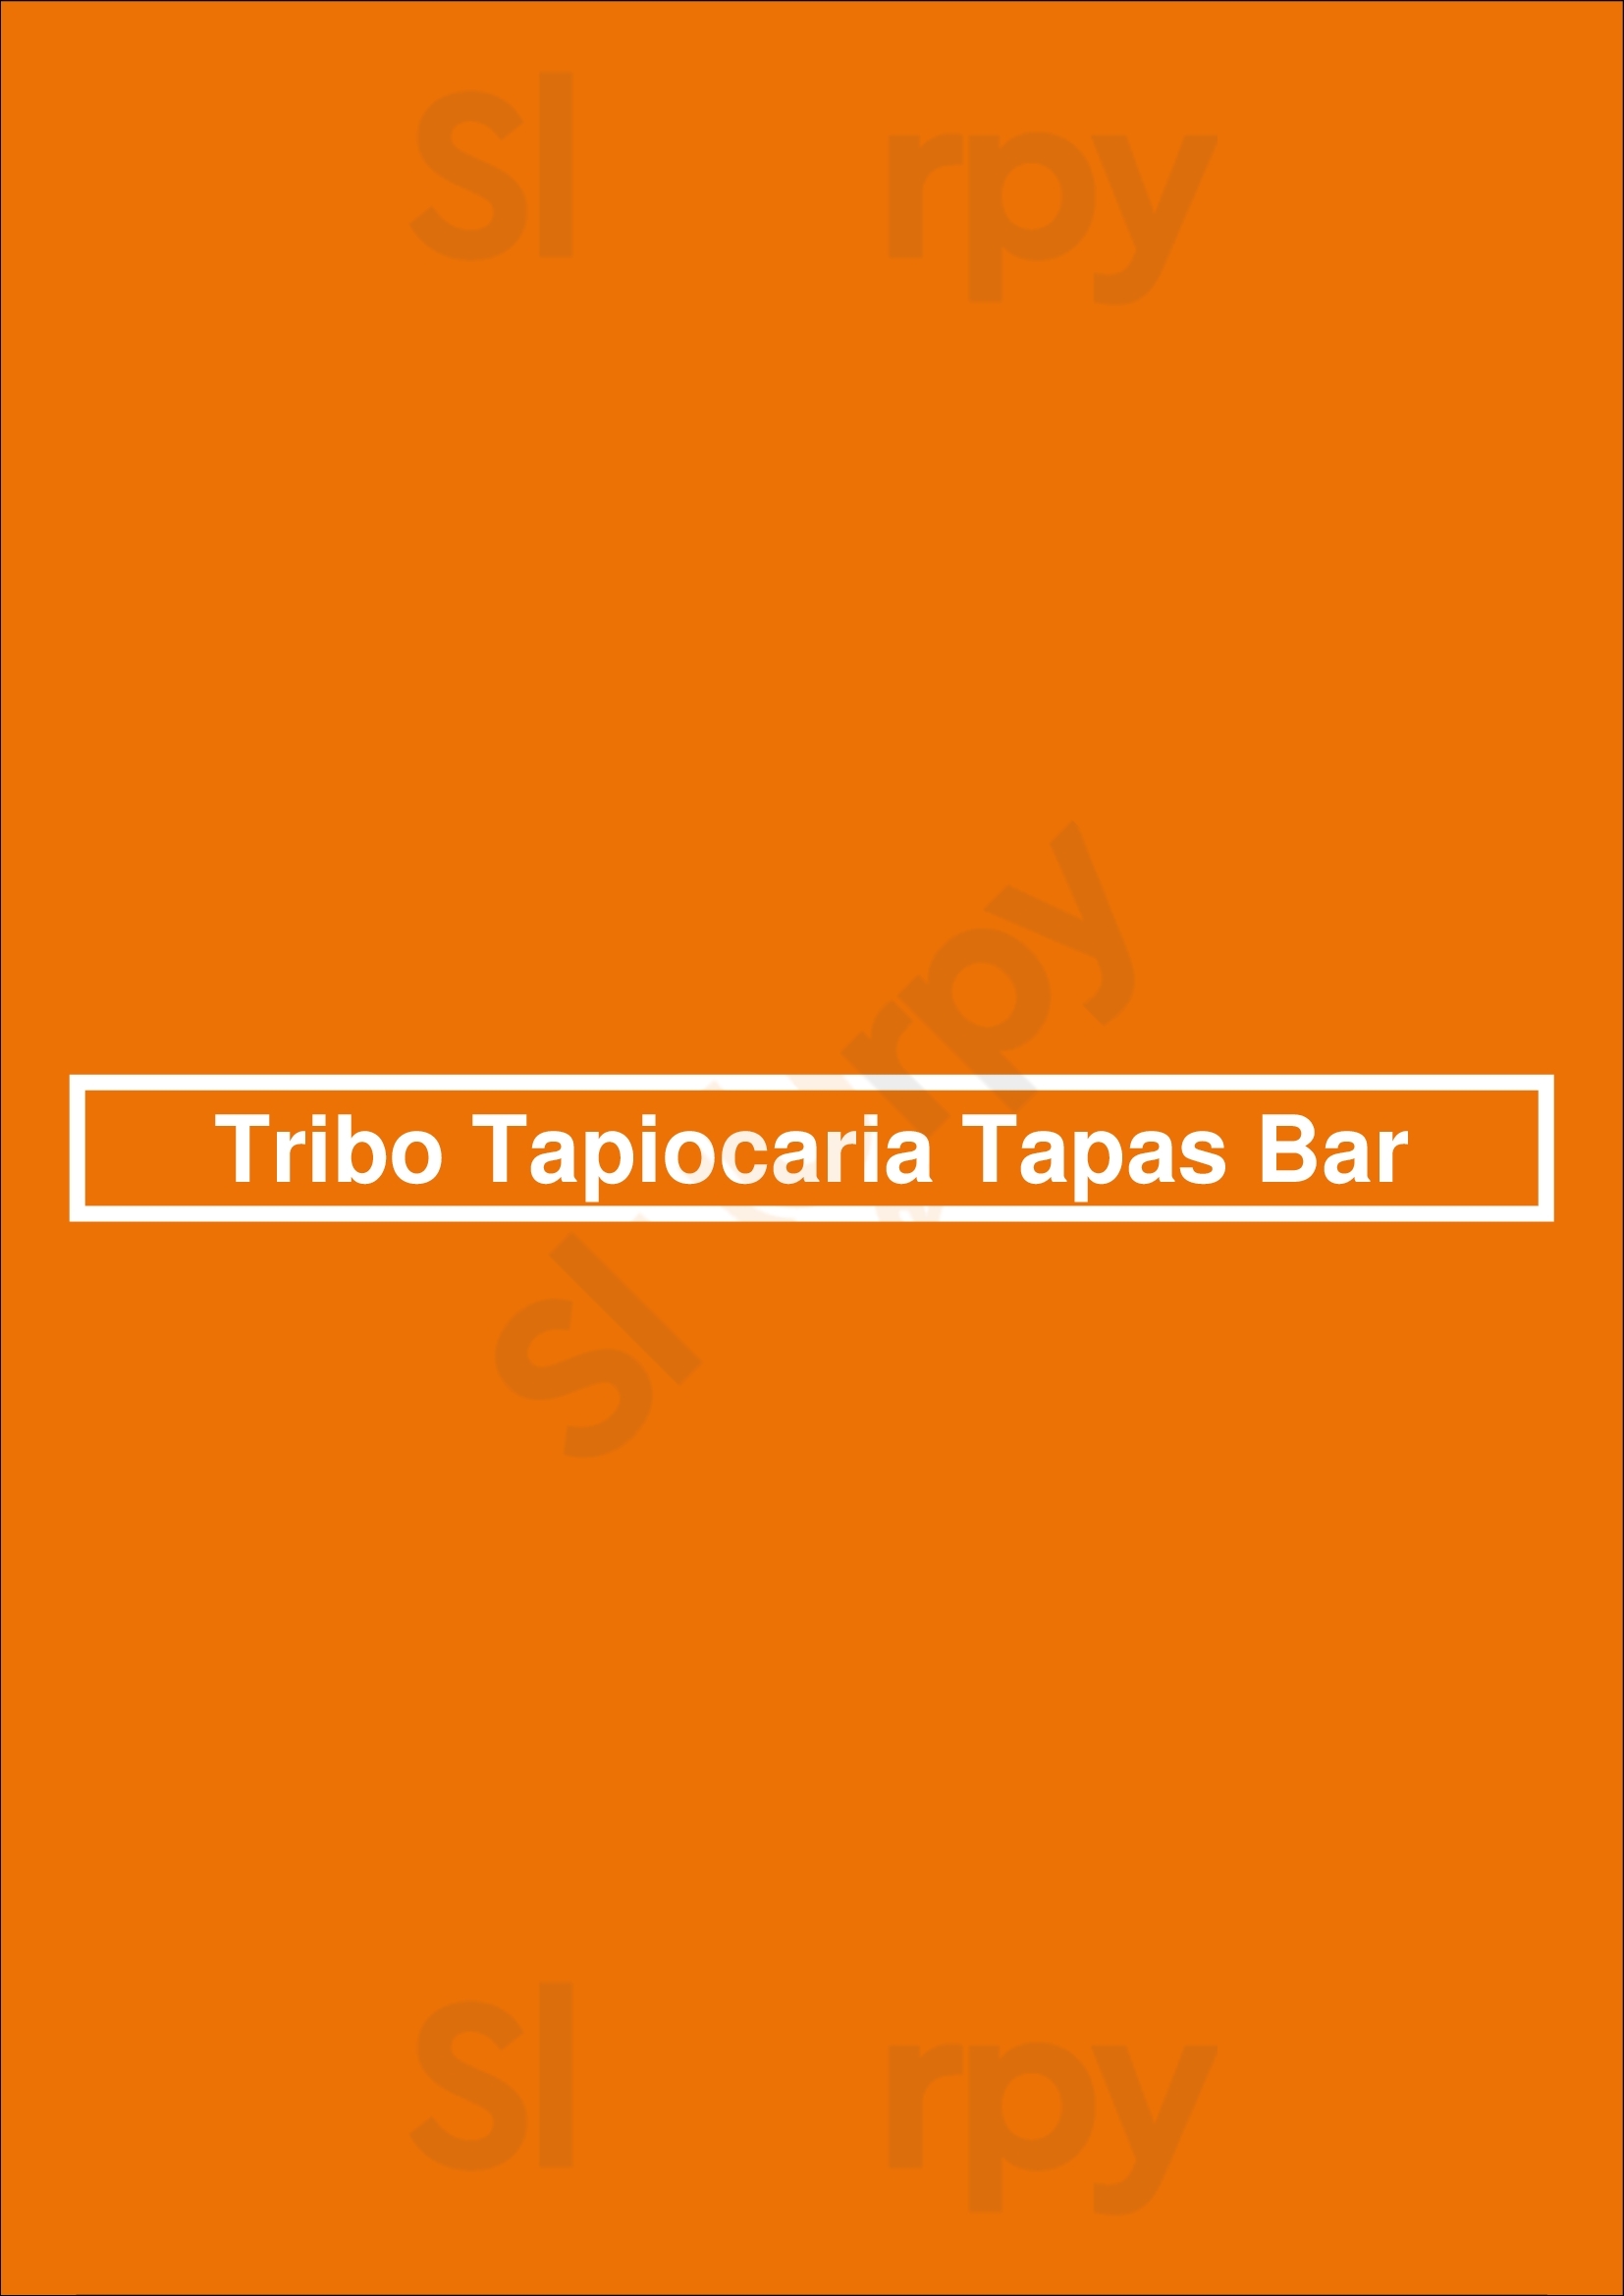 Tribo Tapiocaria Tapas Bar Lisboa Menu - 1